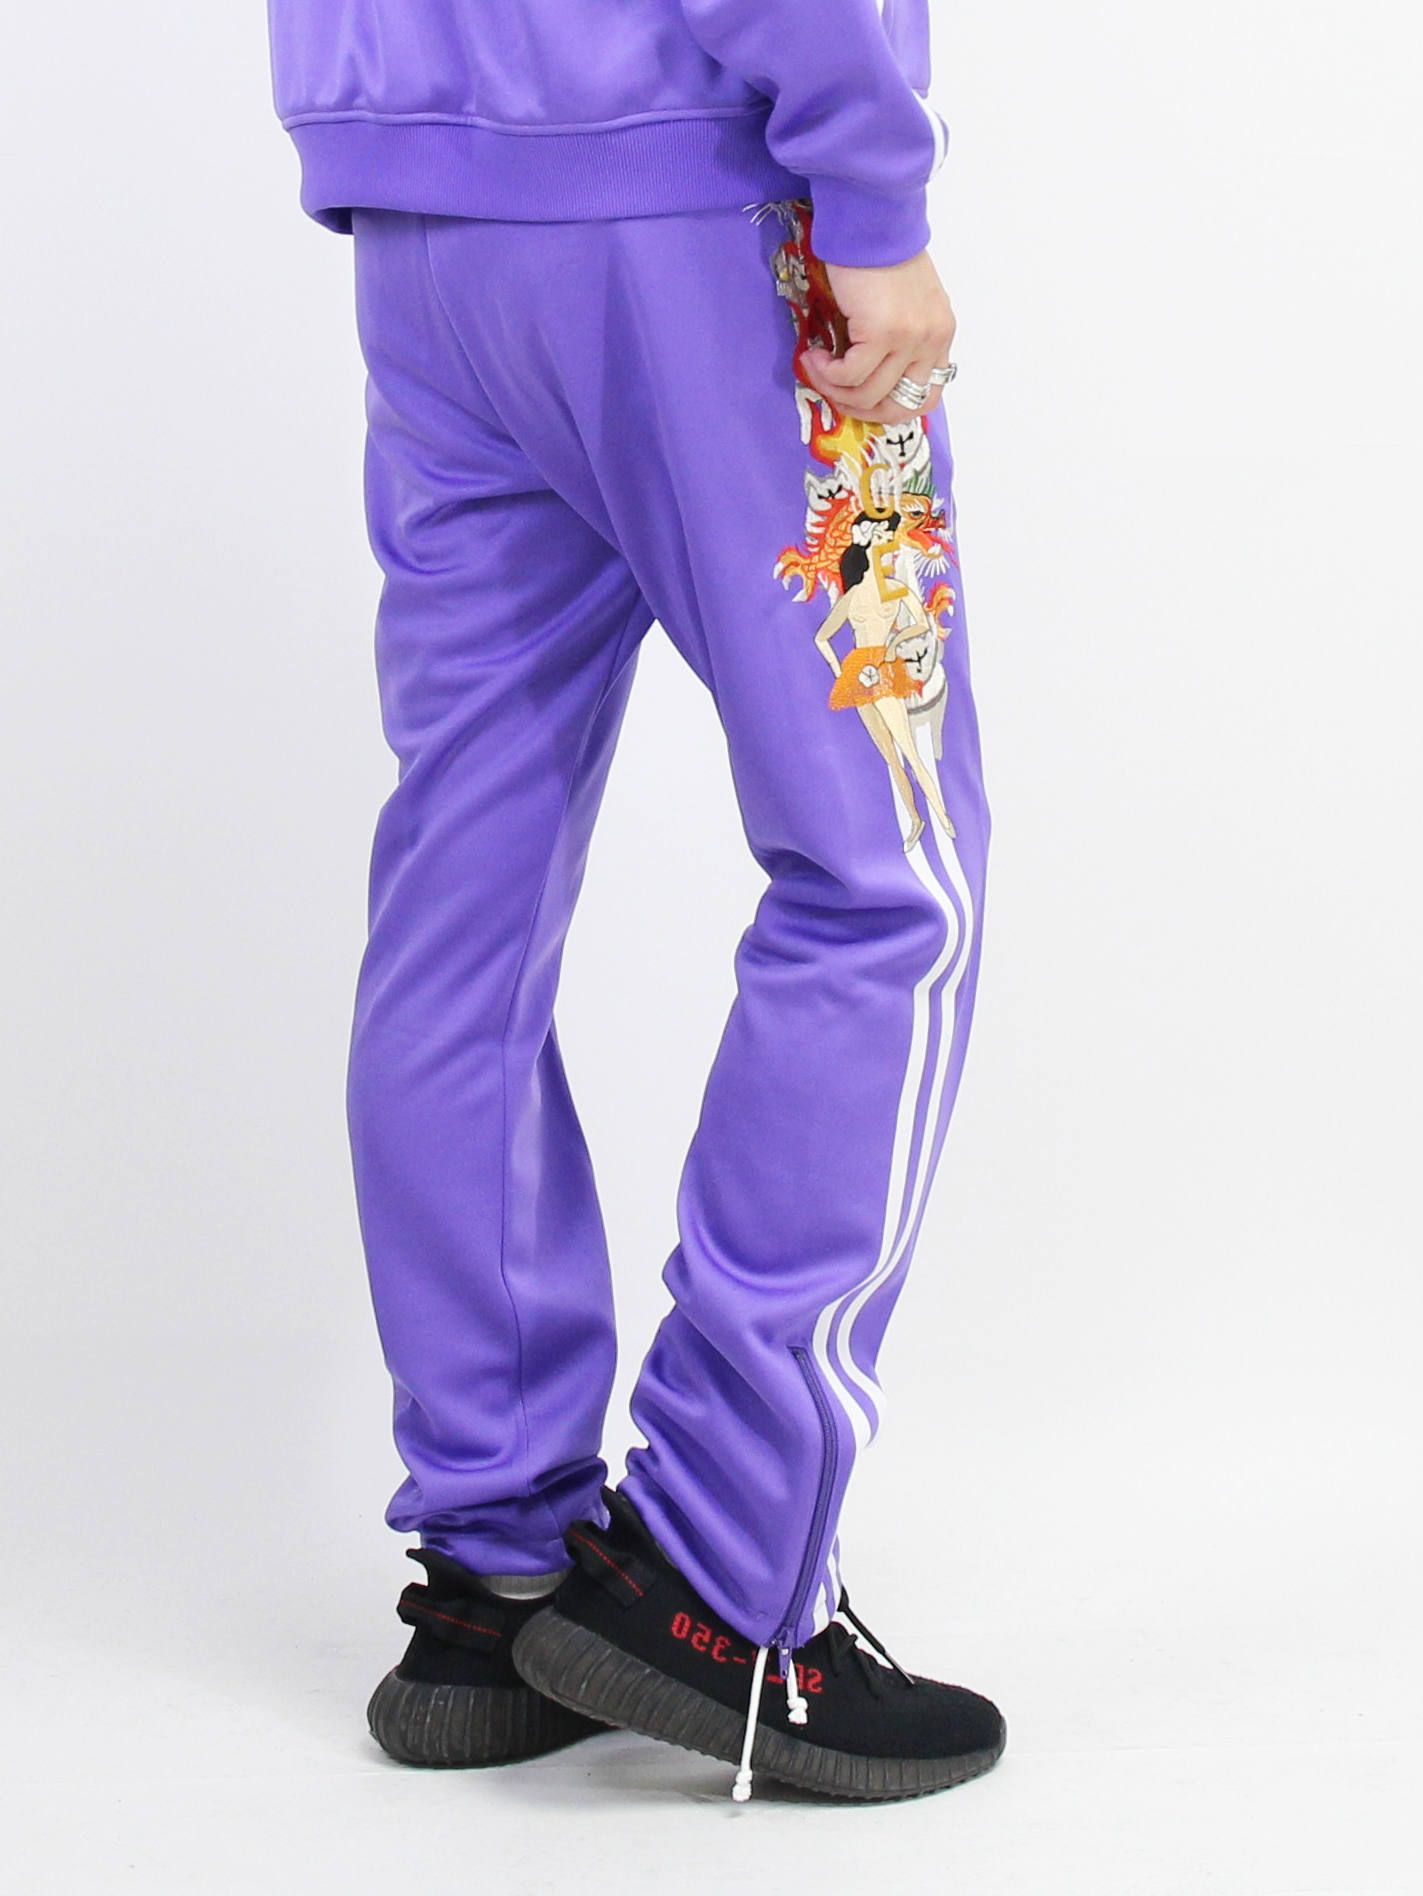 カオス刺繍ジャージーパンツ - CHAOS EMBROIDERY TRACK PANTS - PURPLE - Purple - S